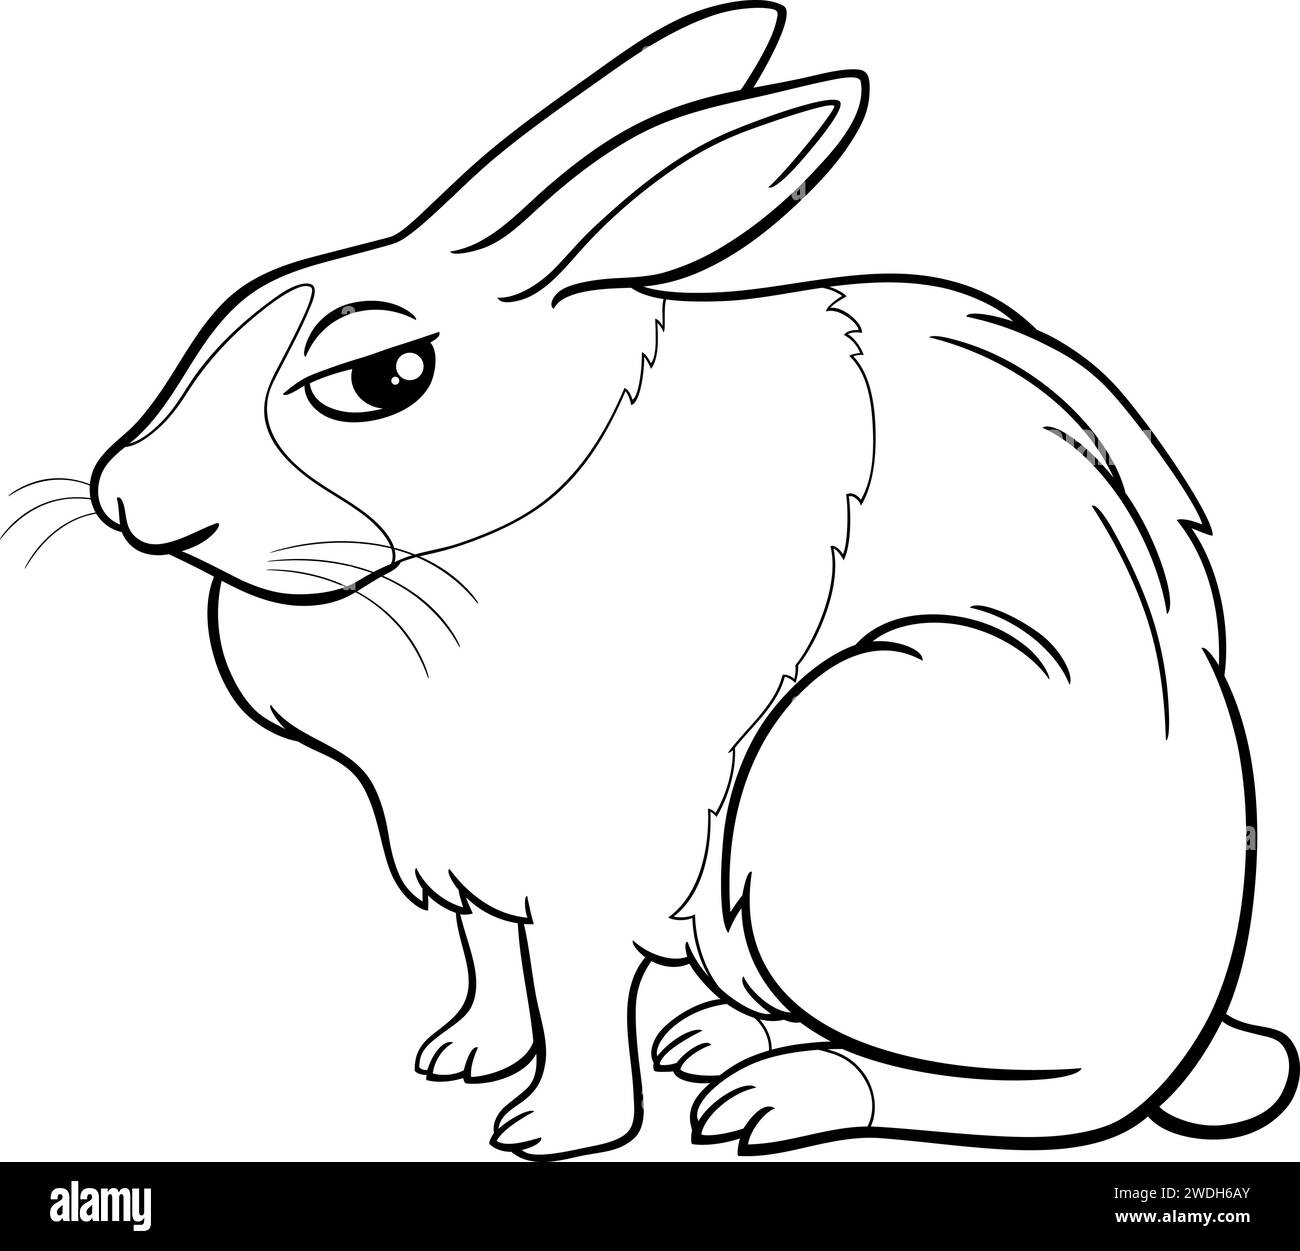 Schwarz-weiße Zeichentrickillustration der lustigen sitzenden Miniatur-Kaninchen-Comic-Tierfigur Malseite Stock Vektor